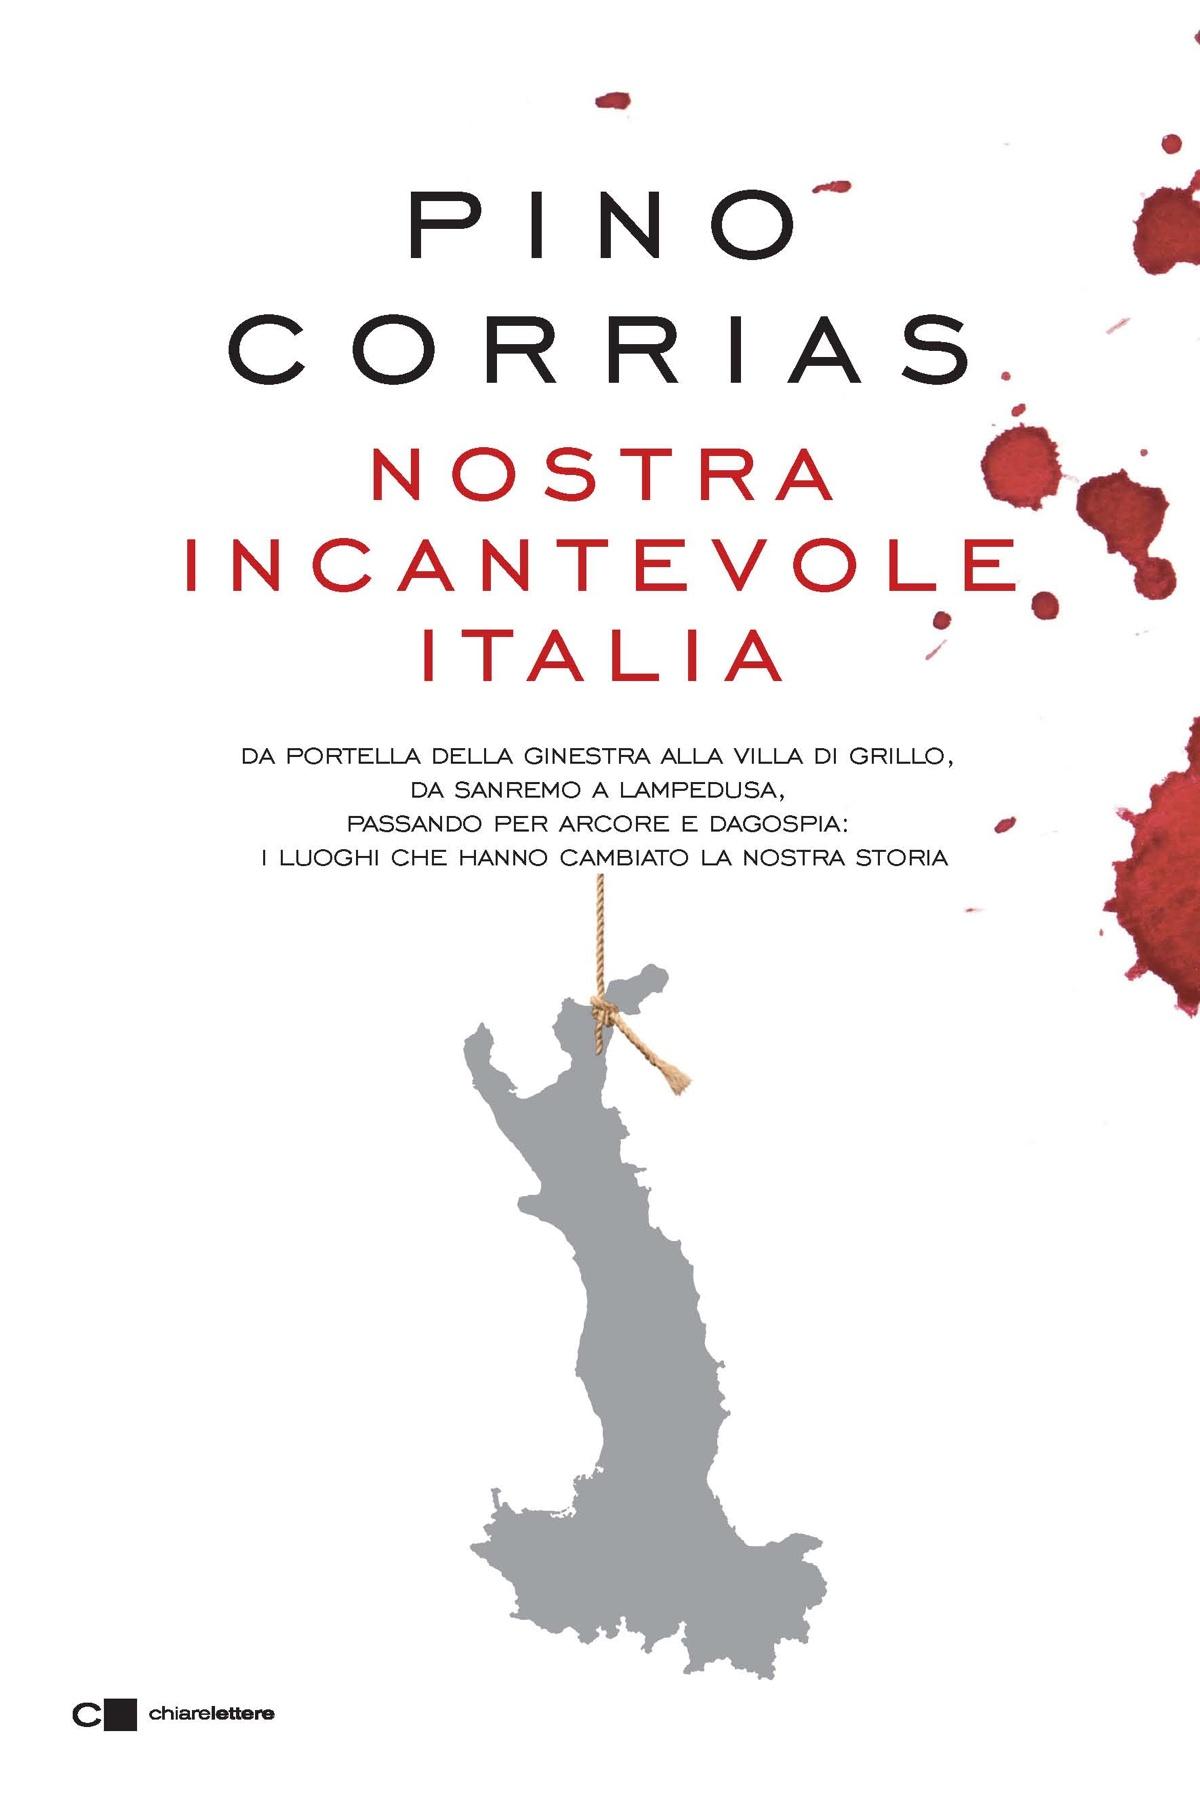 Pino Corrias, Nostra incantevole Italia, Studio Moscarini, presentazione libro, copertina, chiarelettere